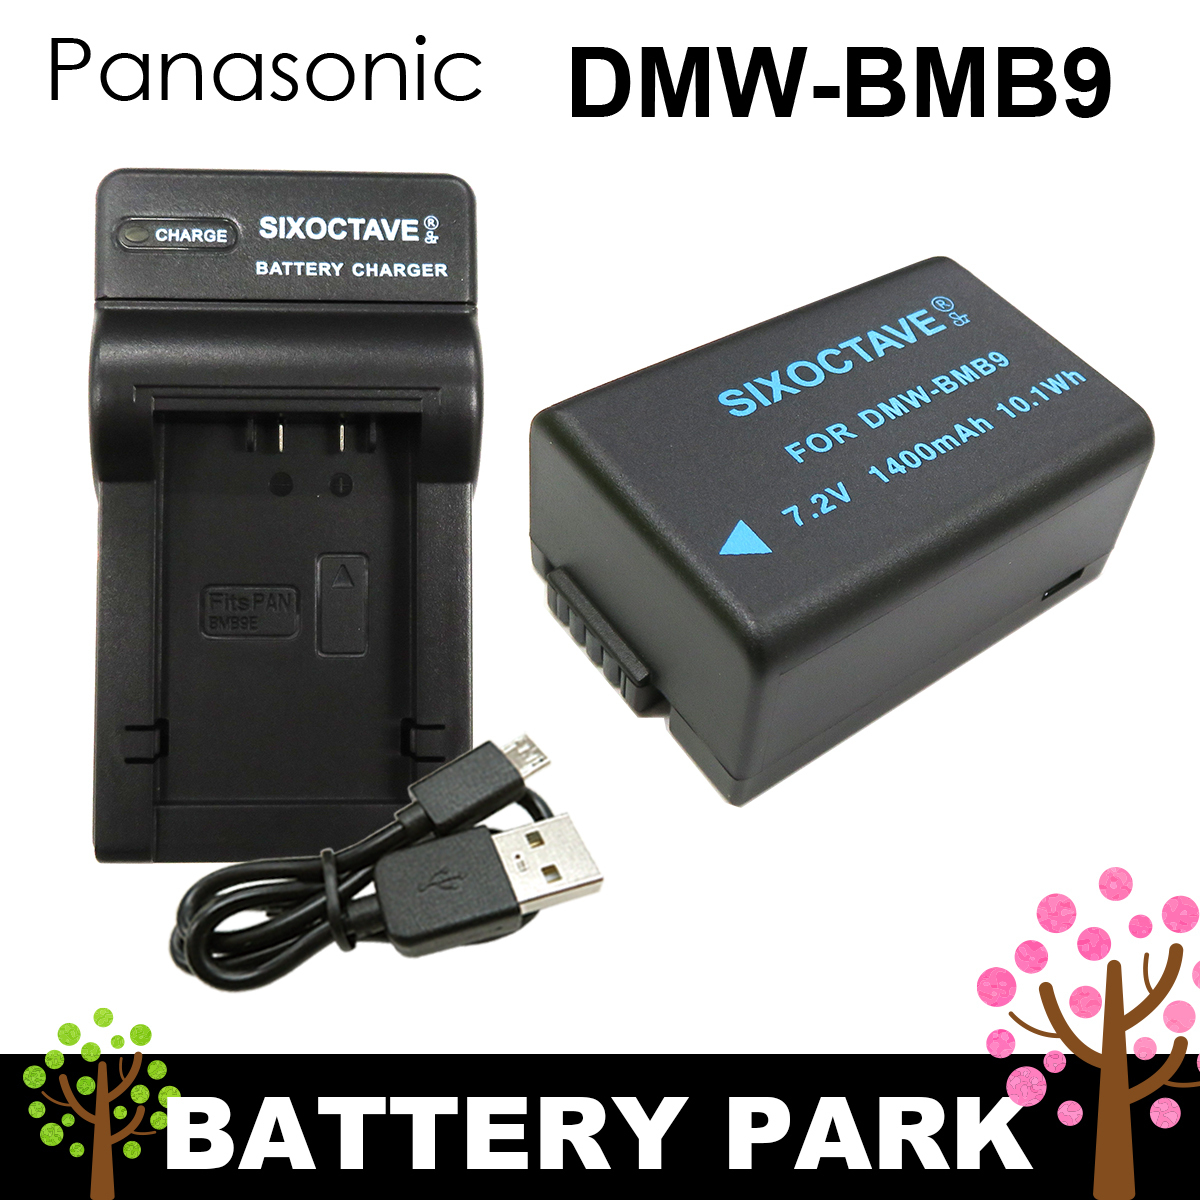 DMC-FZ45 DMW-BMB9E DMC-FZ48 DMC-FZ40 BP-DC9E Akkus kompatibel mit Panasonic Lumix DMC-FZ100 DMC-FZ150 PATONA Dual Schnell-Ladegerät für DMW-BMB9